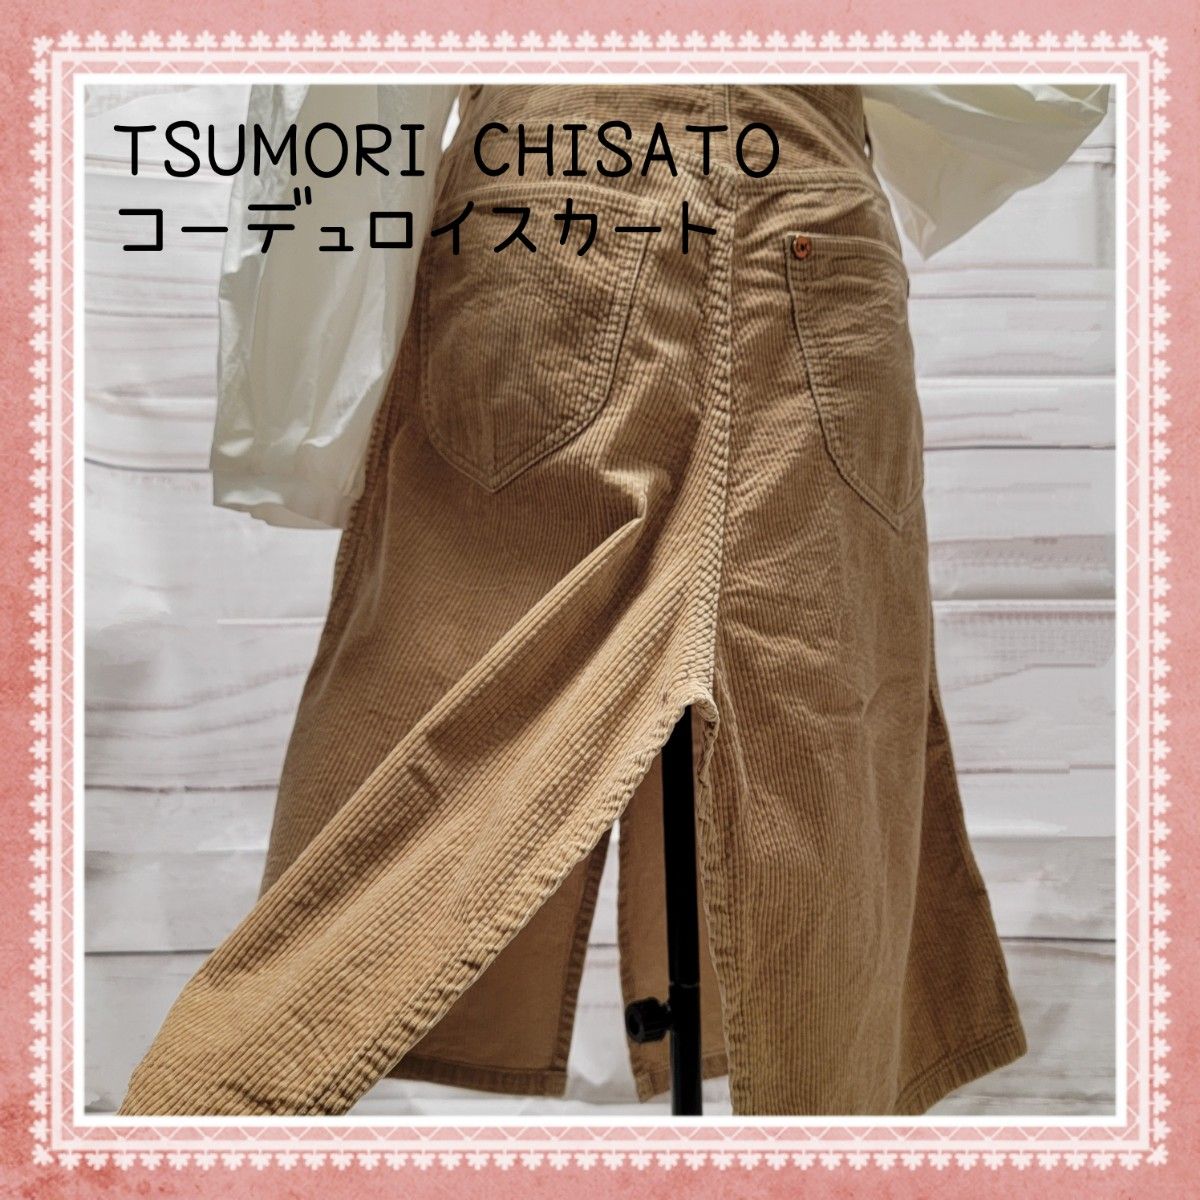 【TSUMORI CHISATO】コーデュロイ パンツに見えるスカート ネコのボタンが可愛い Lサイズ【ツモリチサト】